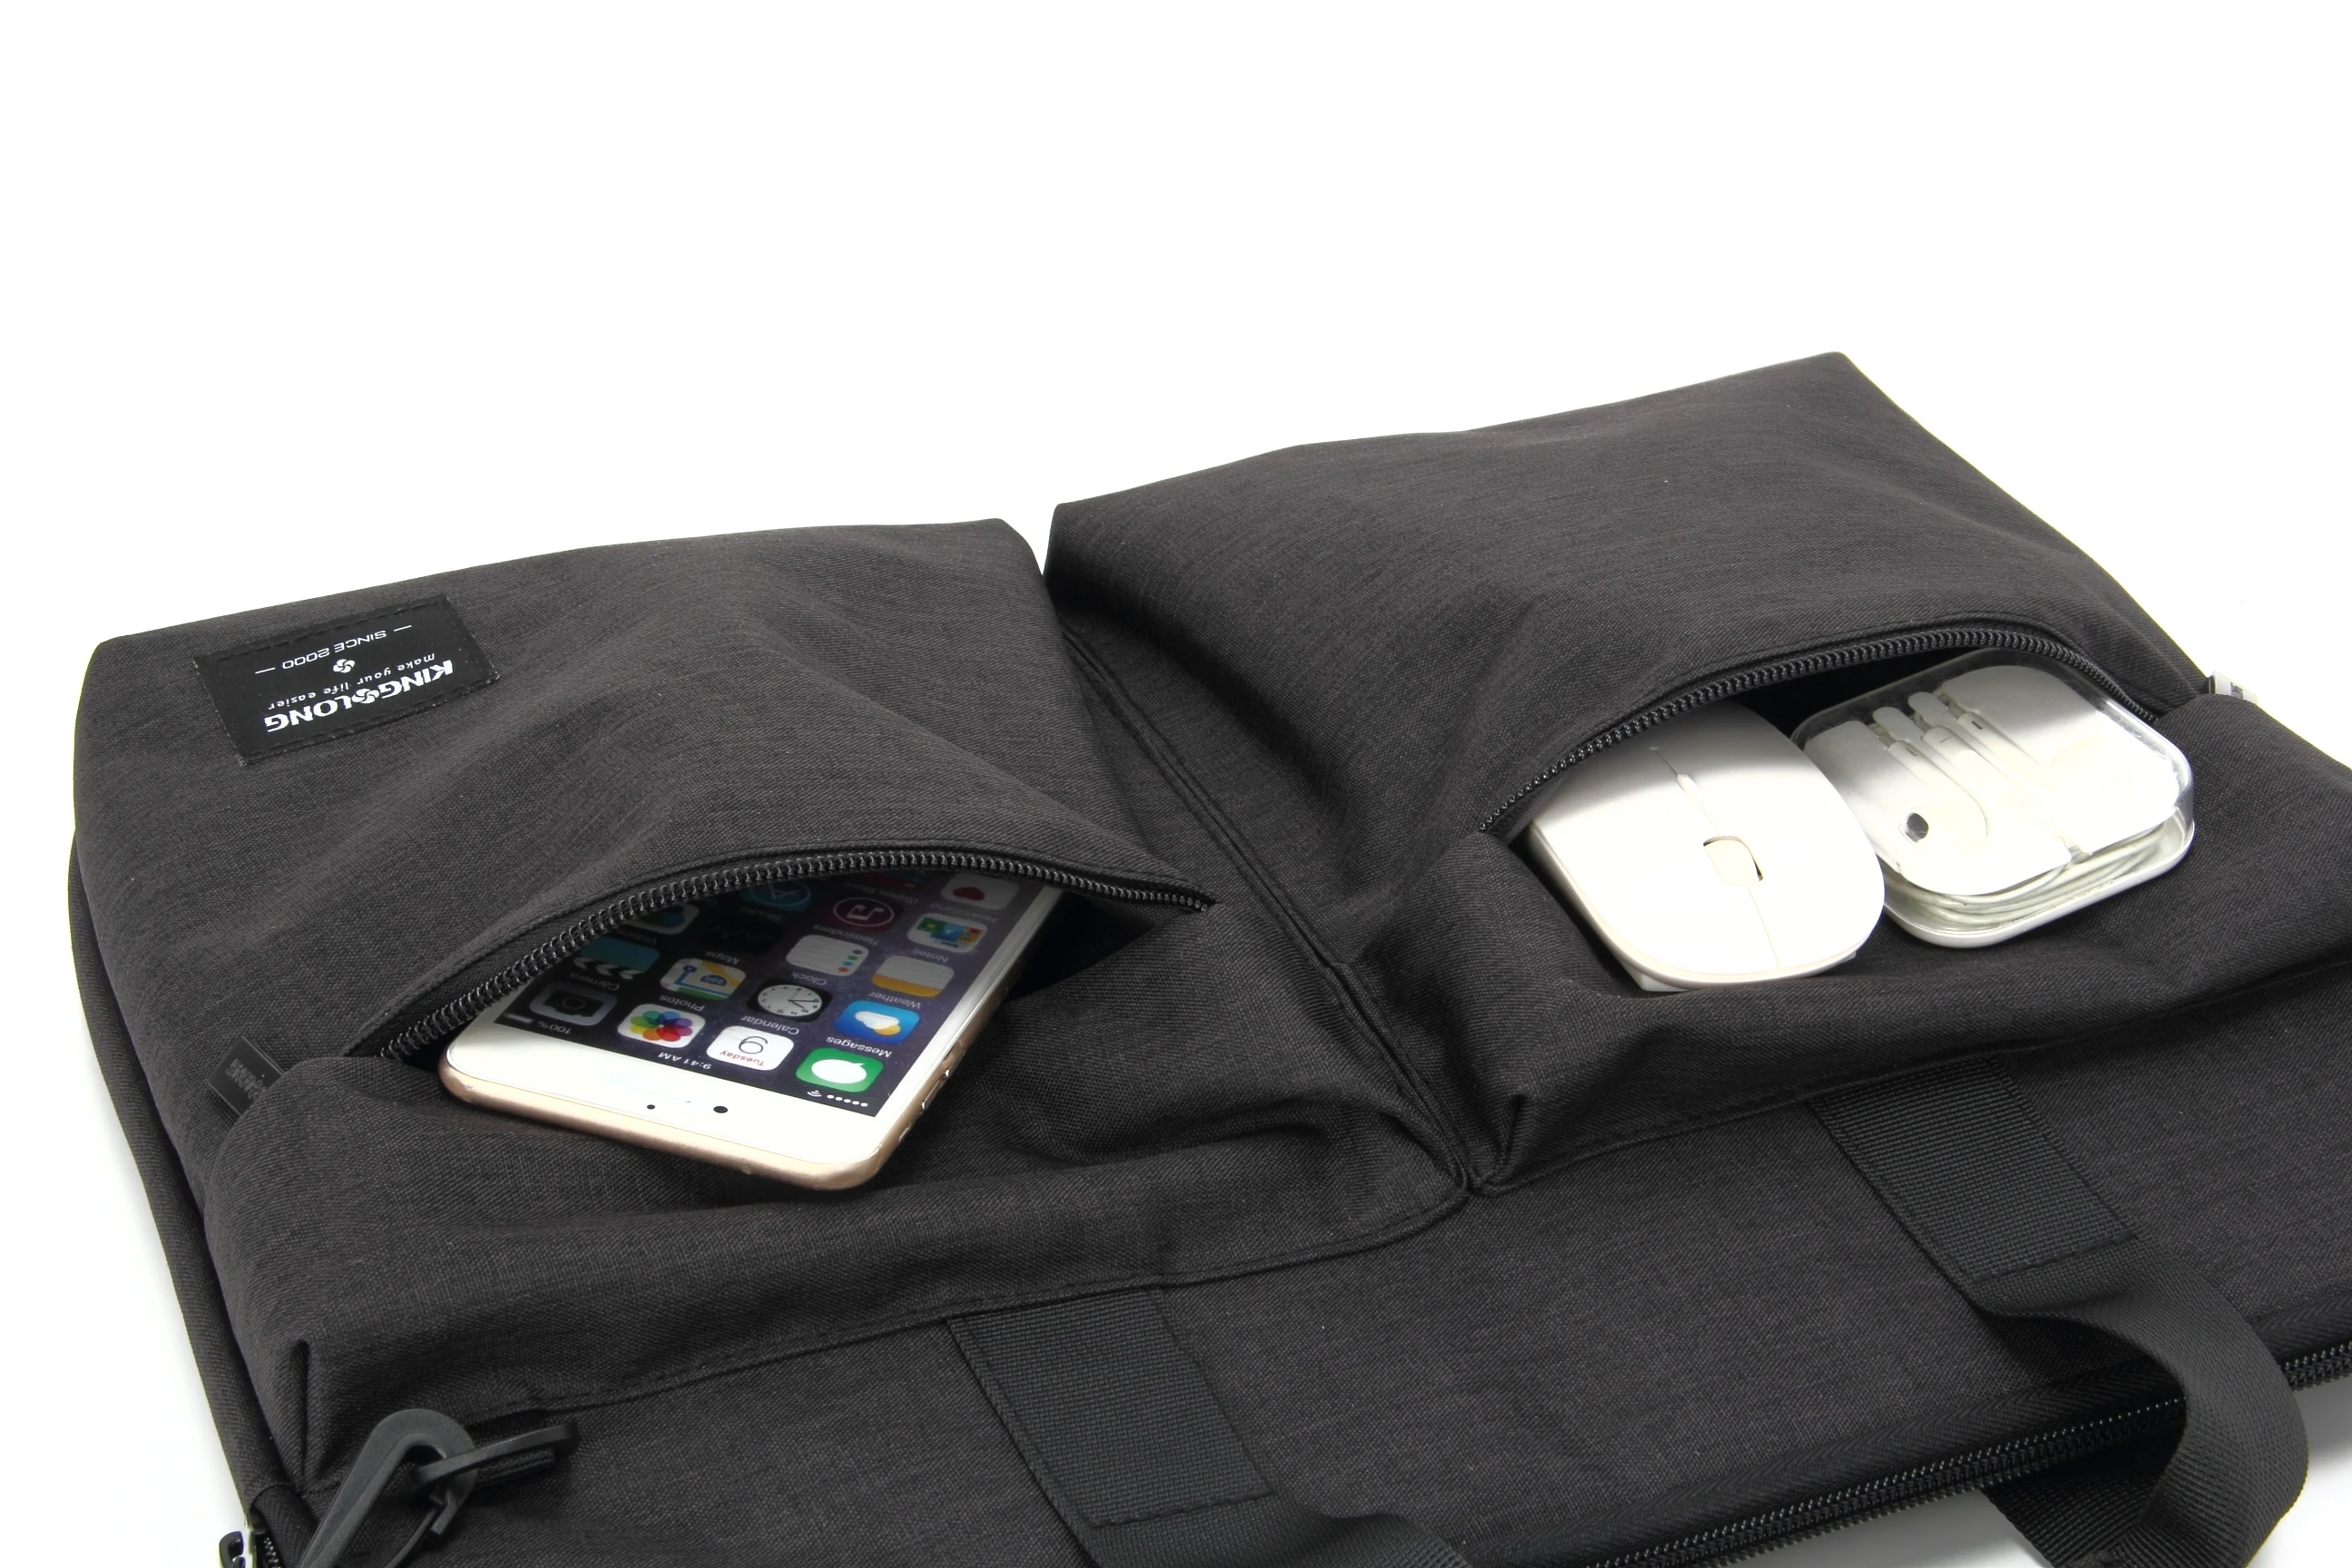 2024 водонепроницаемая сумка через плечо для ноутбука в жестком корпусе, модная женская сумка для путешествий, компьютера